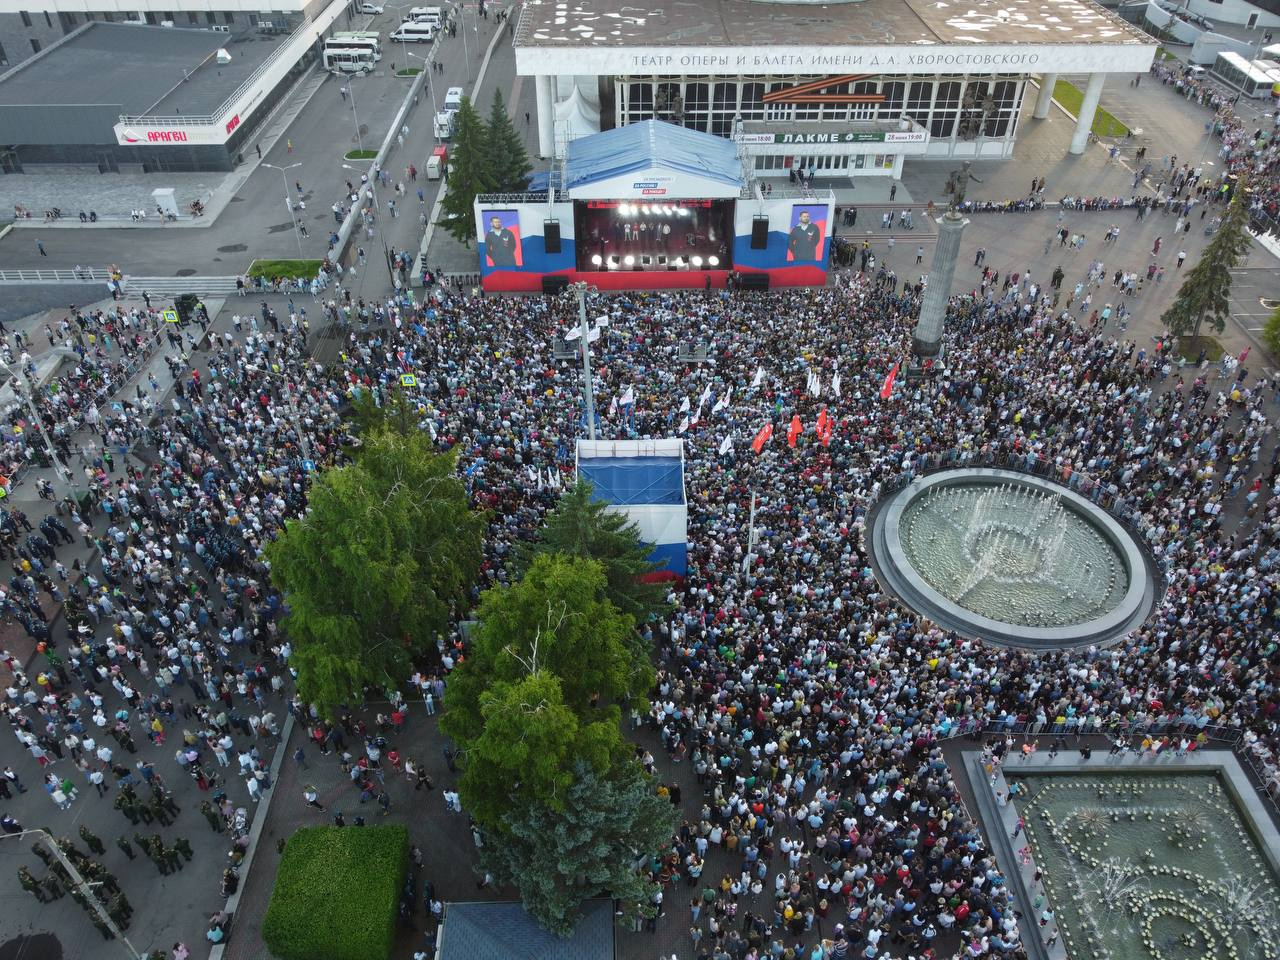 По словам вице-губернатора, на концерт пришли 10 тысяч человек